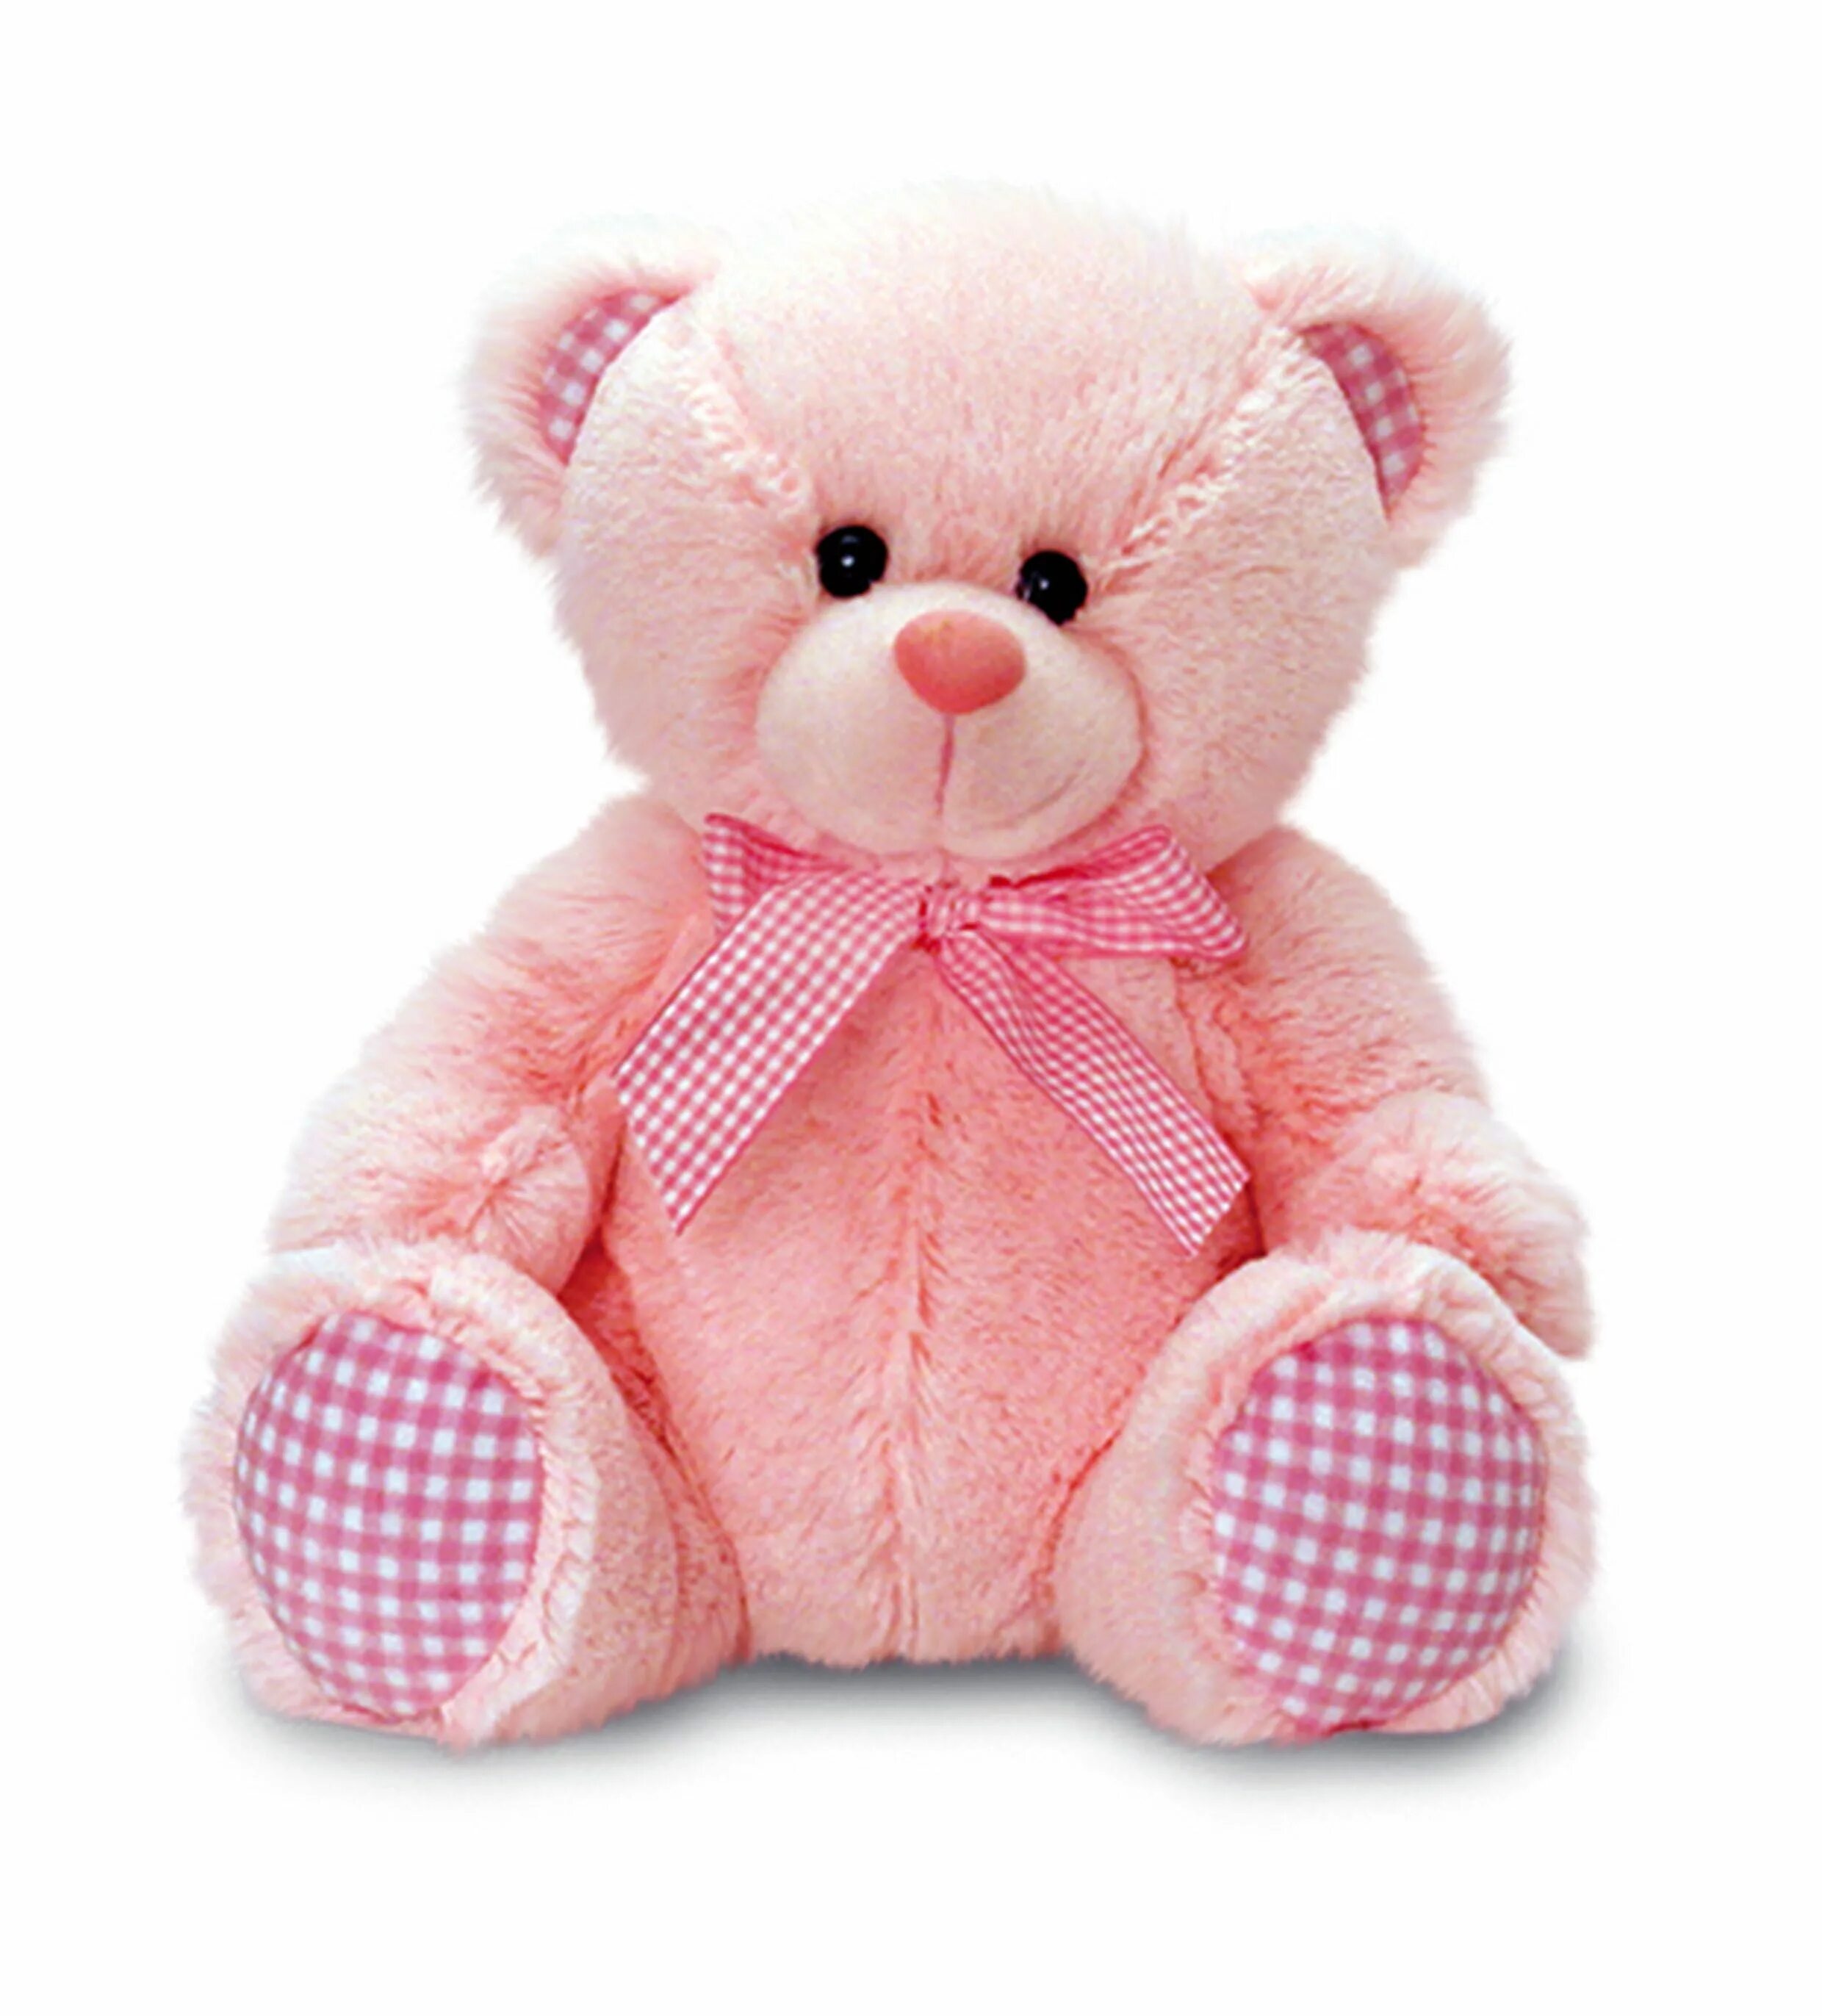 Keel Toys медведь. Пинк Беар. Розовый медведь игрушка. Розовые игрушки.